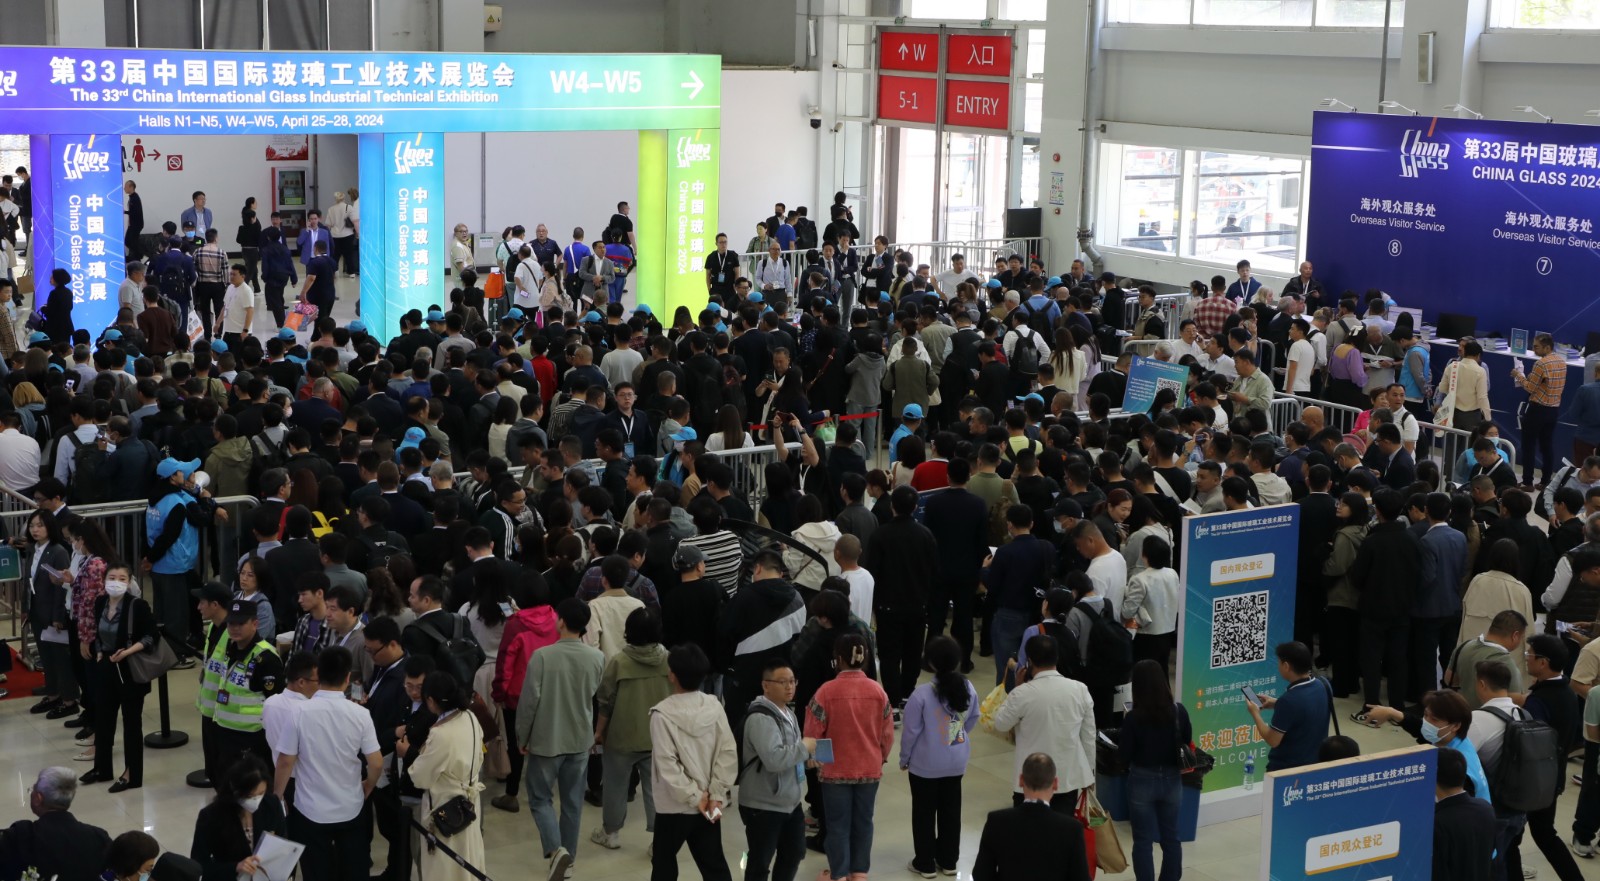 第三十三届中国国际玻璃工业技术展览会成功举办